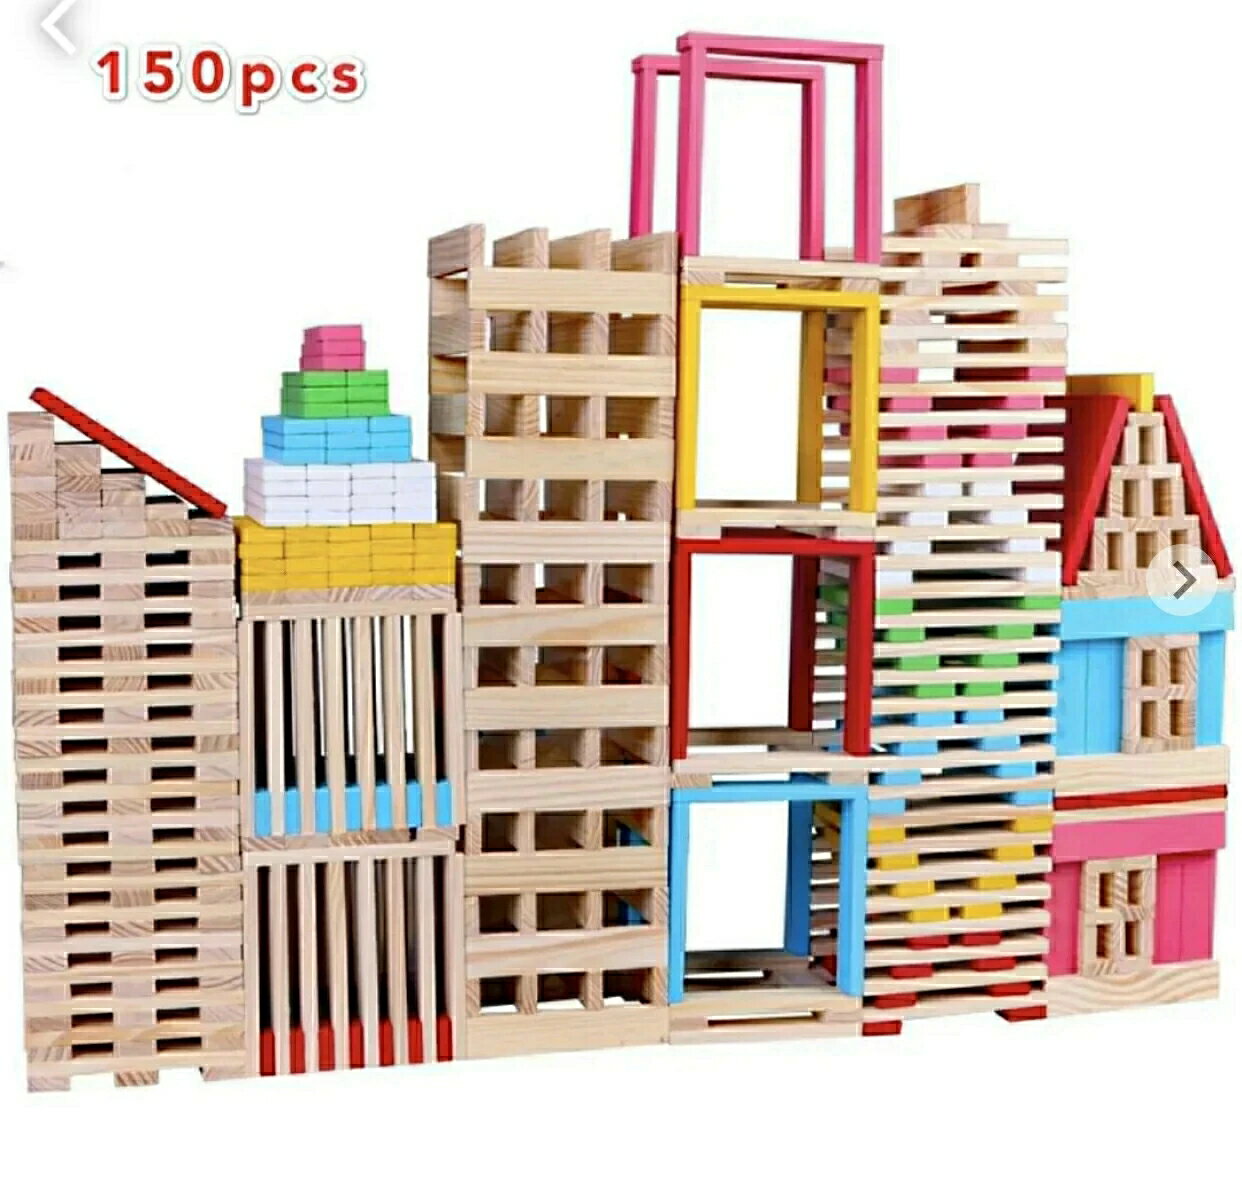 積木 カプラ風 ビルディングブブロック スティック 積み木玩具 ドミノ 木製パズル 積み木パズル 知育玩具 木製おもちゃ 収納袋付き 150ピース カラフル